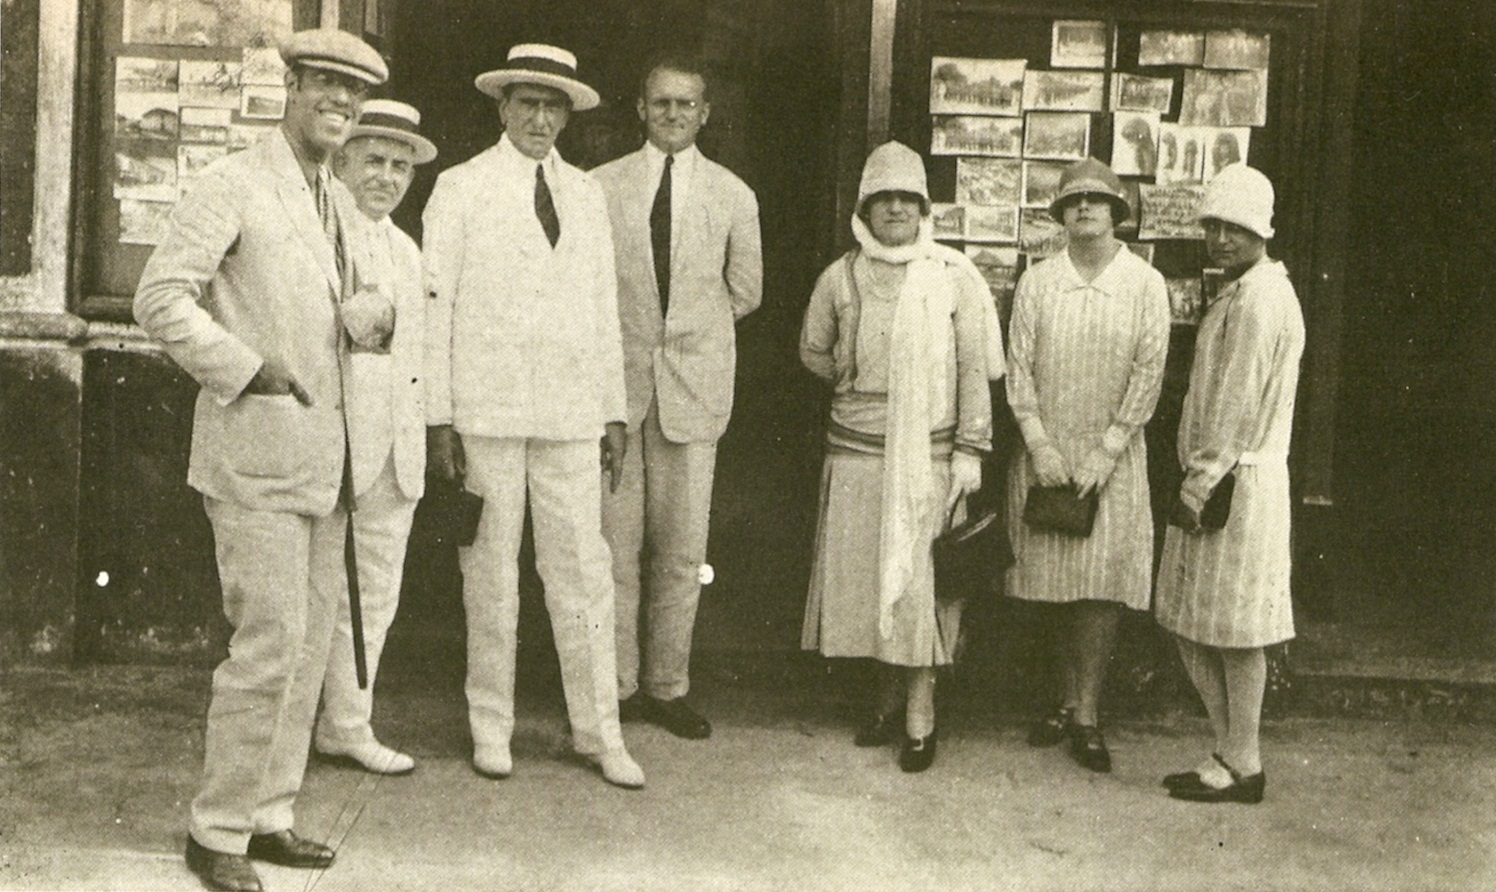 Foto antiga em sépia de Mário de Andrade, à esquerda, ao lado de seis pessoas não identificadas. Os quatro homens, todos à esquerda, usam terno e gravata e apenas um não usa chapéu. As três mulheres, à direita, usam vestidos até as canelas, carregam bolsas pequena e usam chapéu tipo clochê.